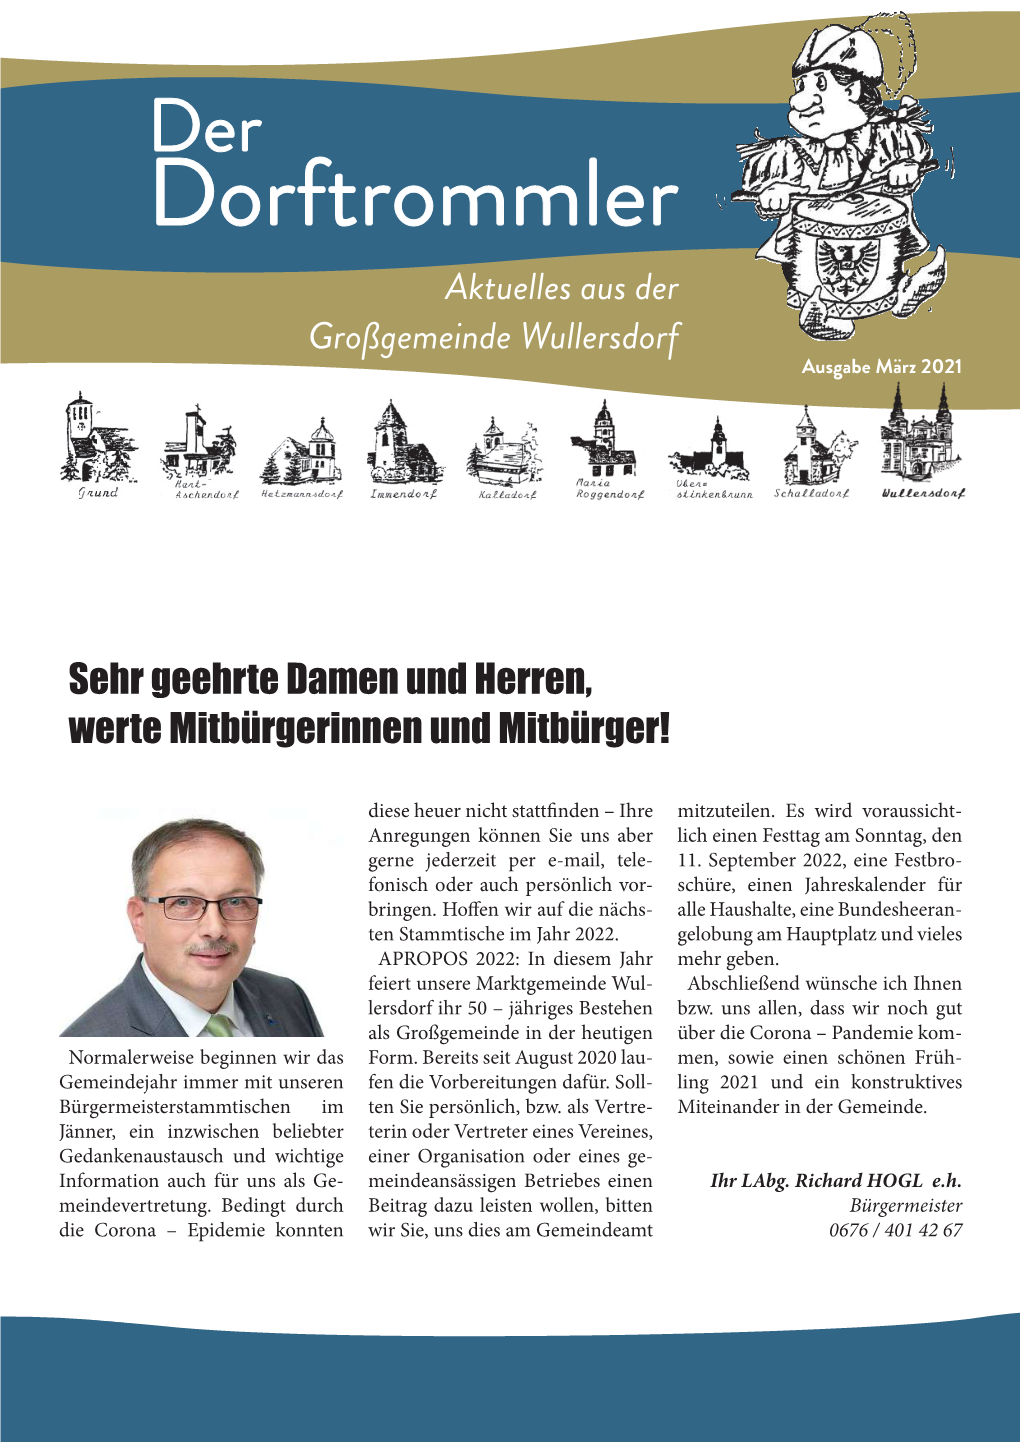 Dorftrommler Aktuelles Aus Der Großgemeinde Wullersdorf Ausgabe März 2021